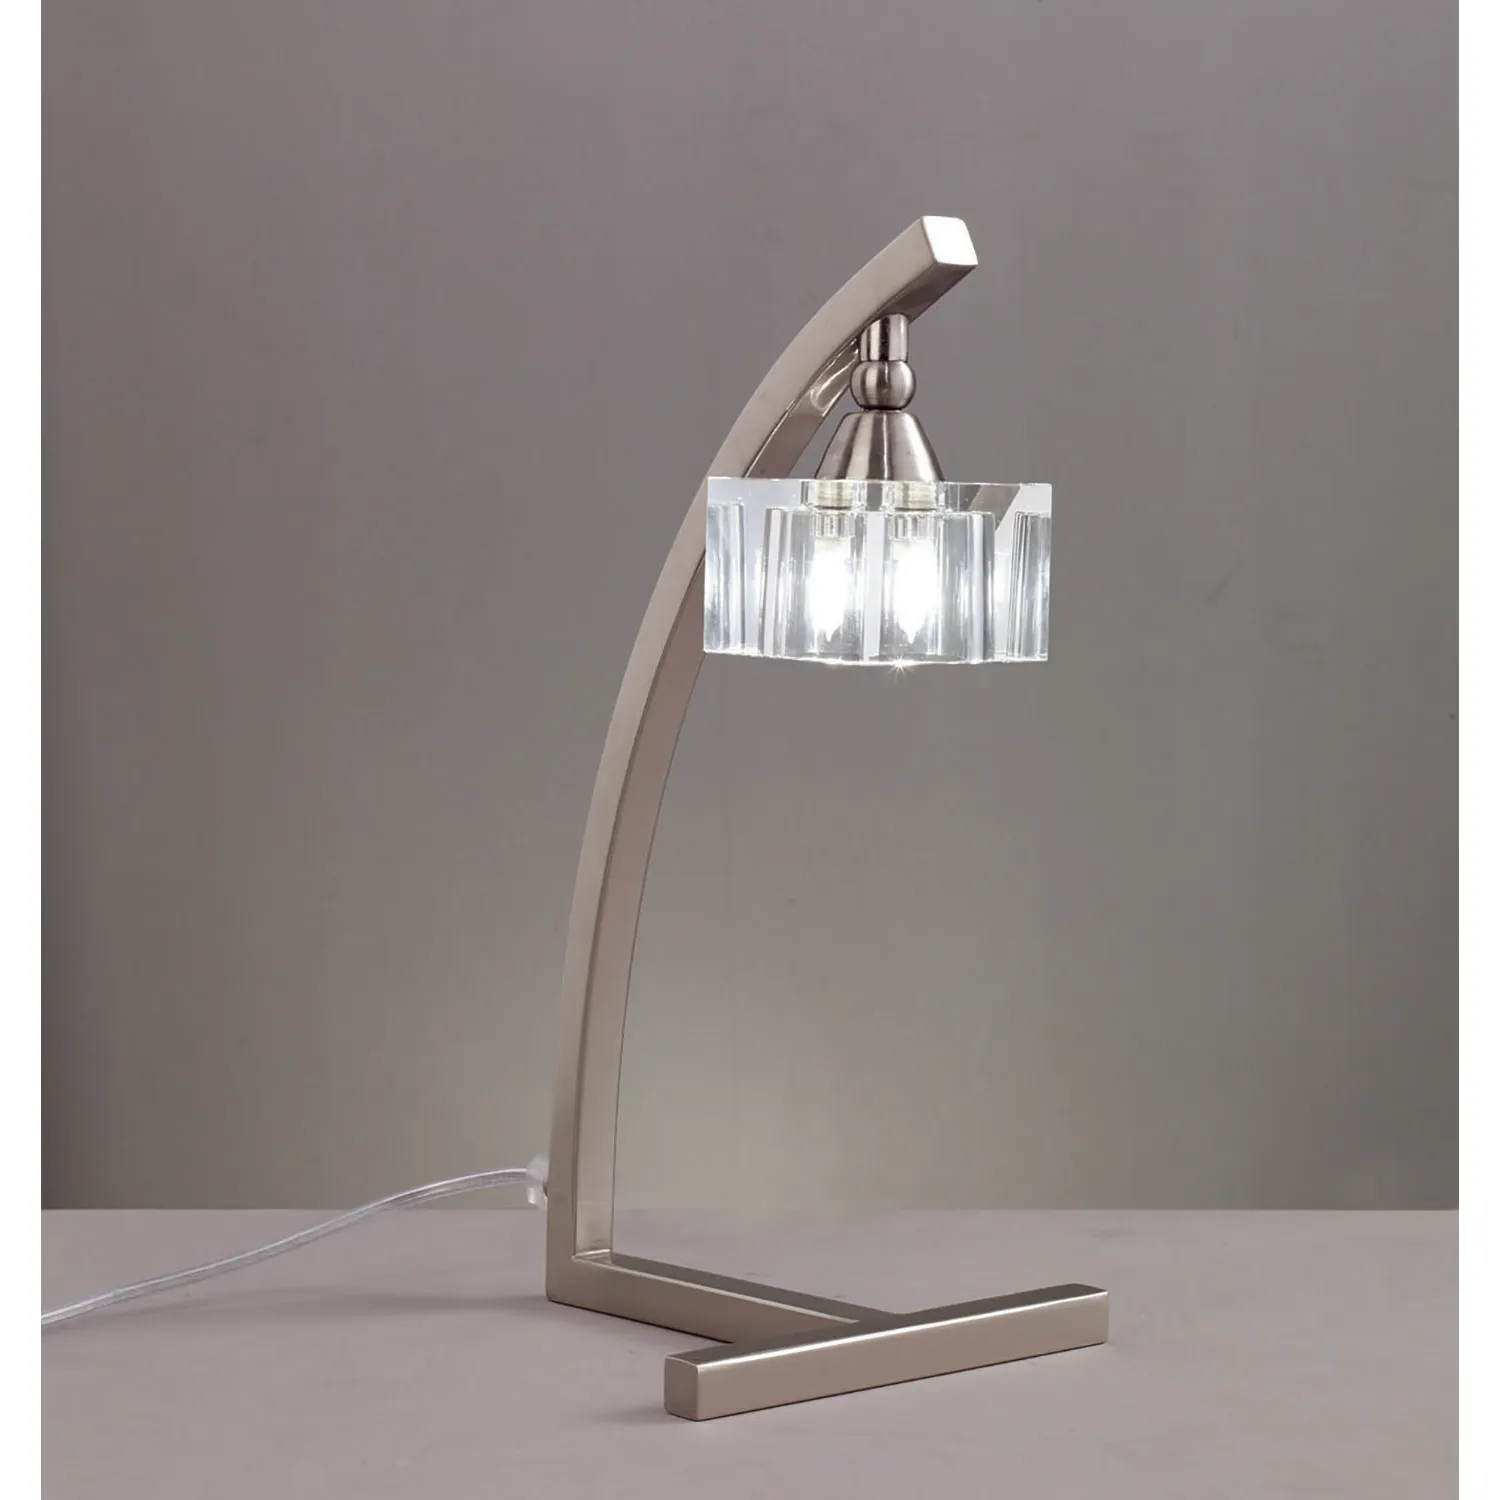 Cuadrax Table Lamp 1 Light G9 Satin Nickel